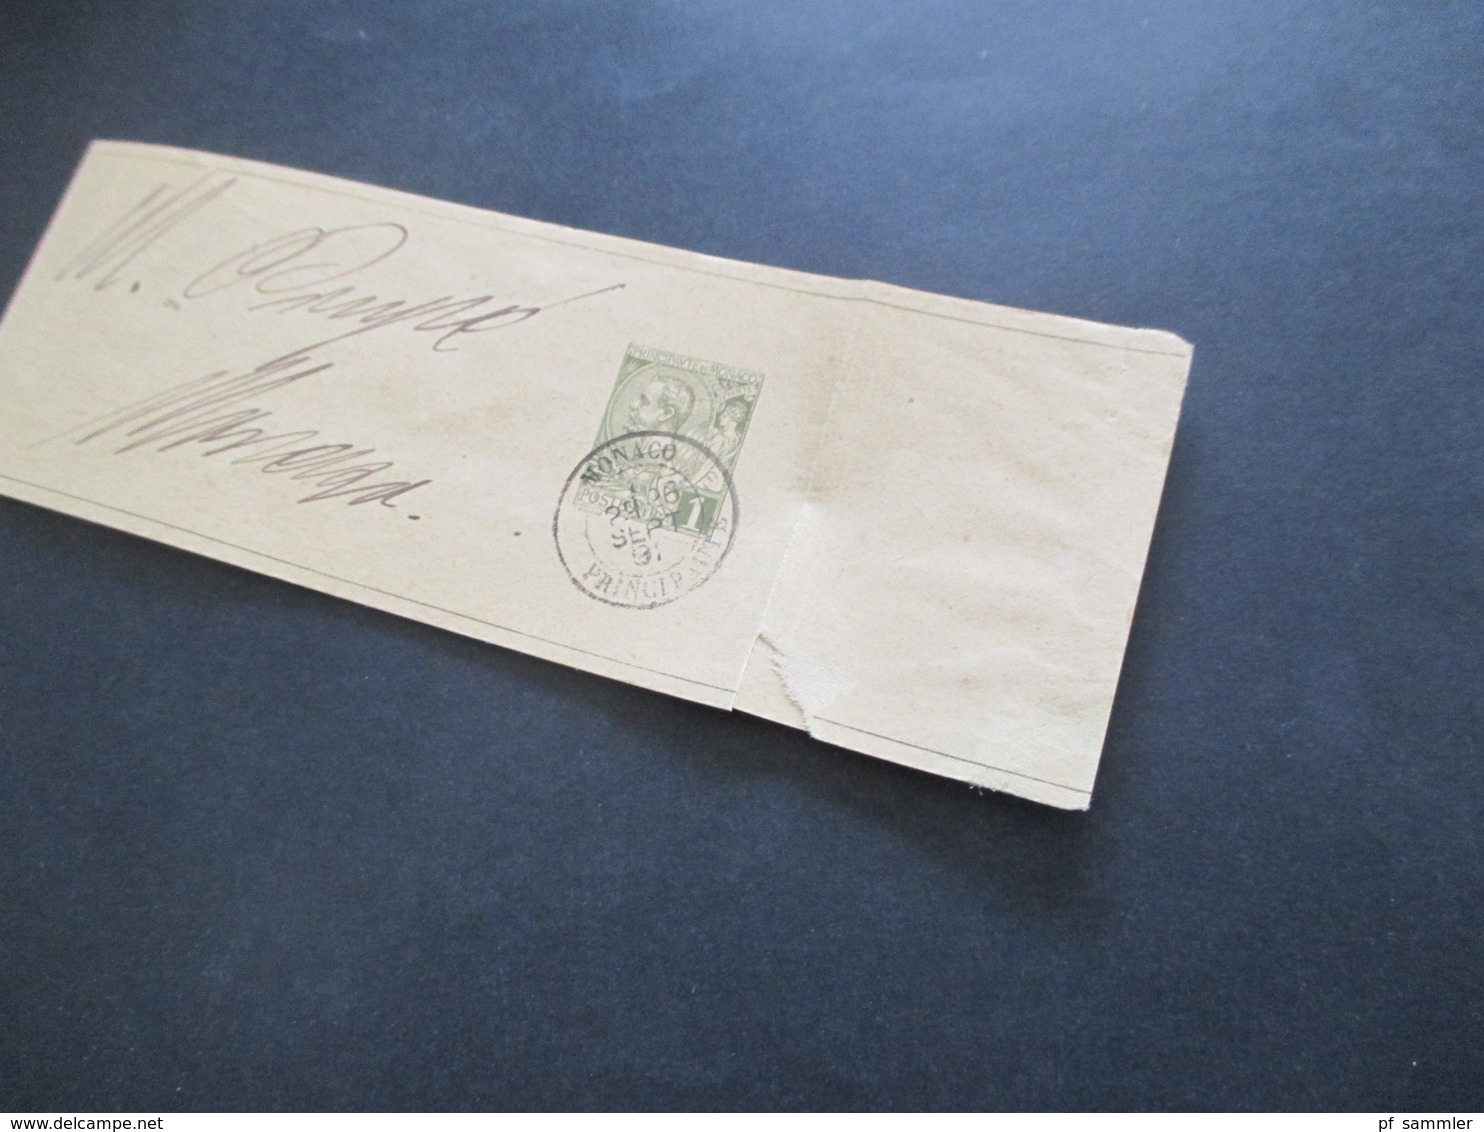 Monaco ca. 1891 -1905 Postkarten / 1x Umschlag mit Aufdruck Taxe Reduite / Carte Lettre und 1x Streifband insgesamt 6 St